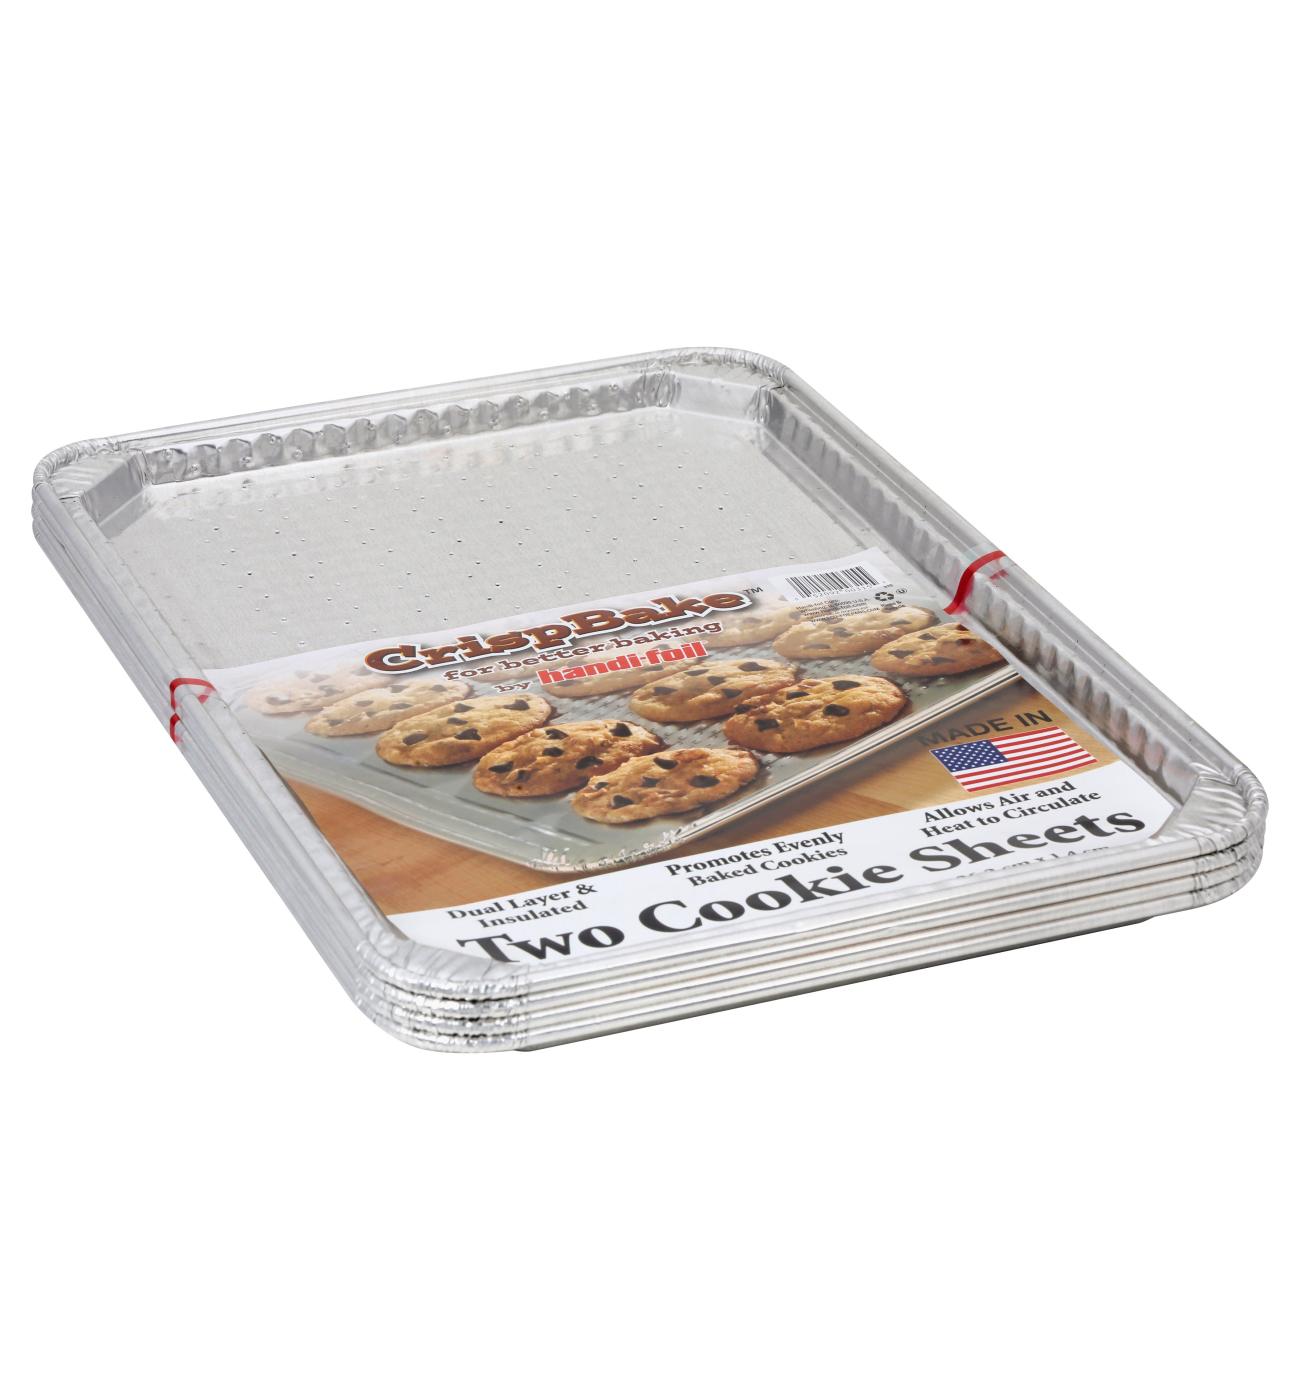 Handi-foil Crisp Bake Cookie Sheet - Silver 15.09 in x 10.31 in x 0.56 in